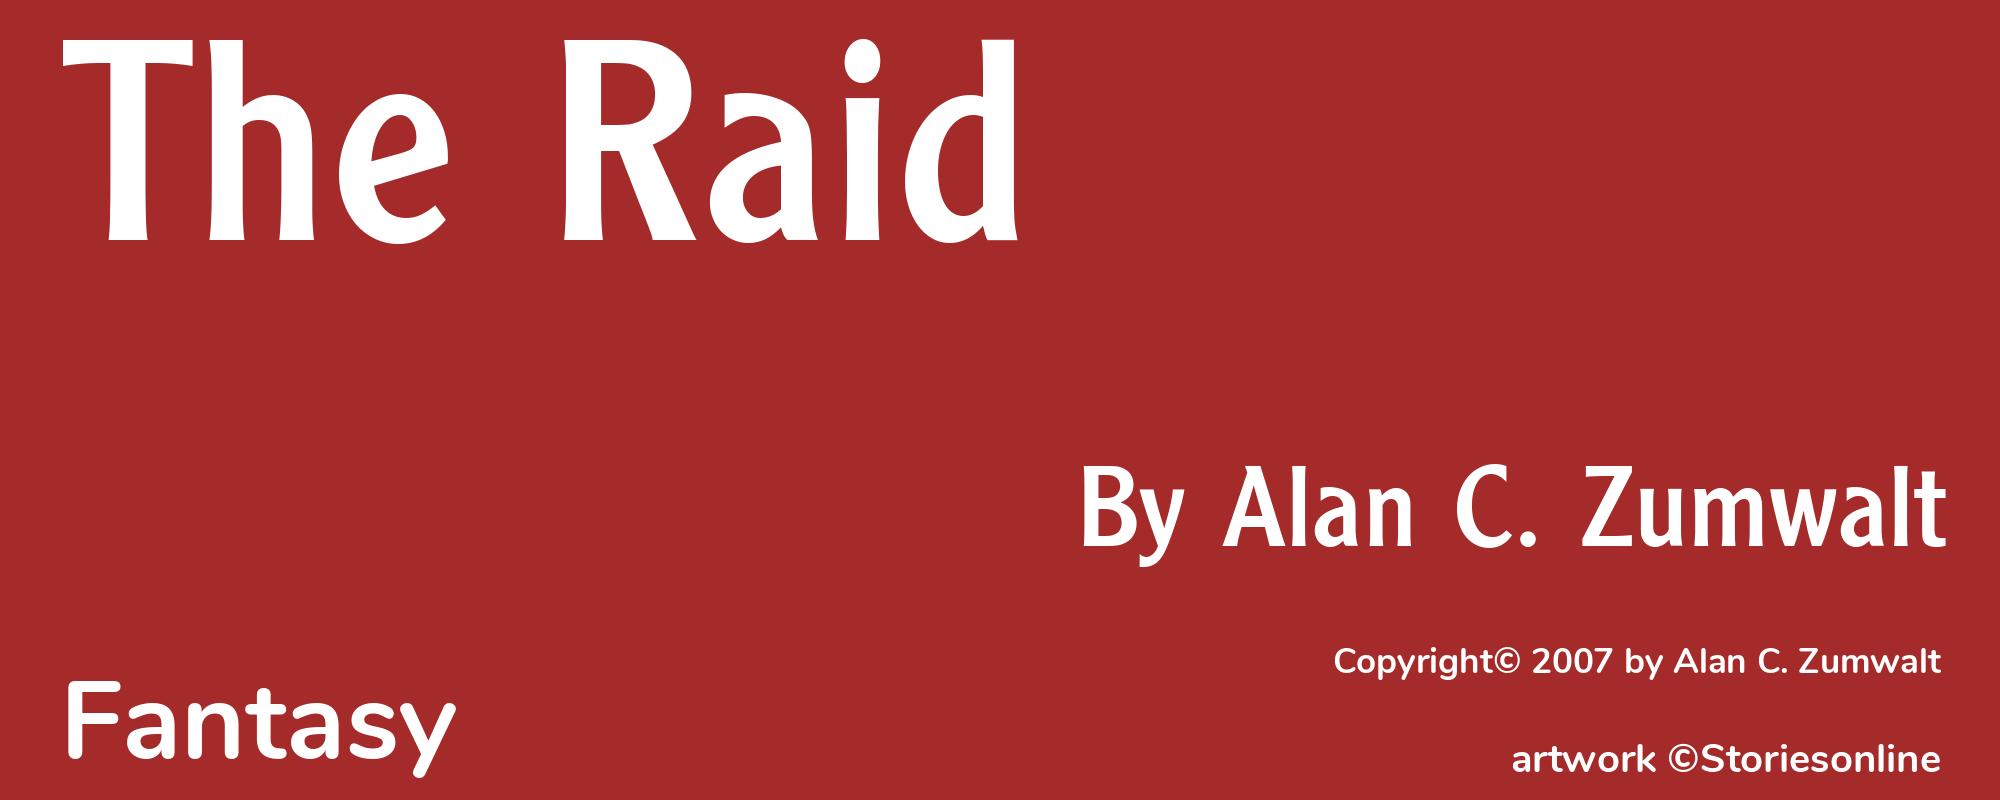 The Raid - Cover